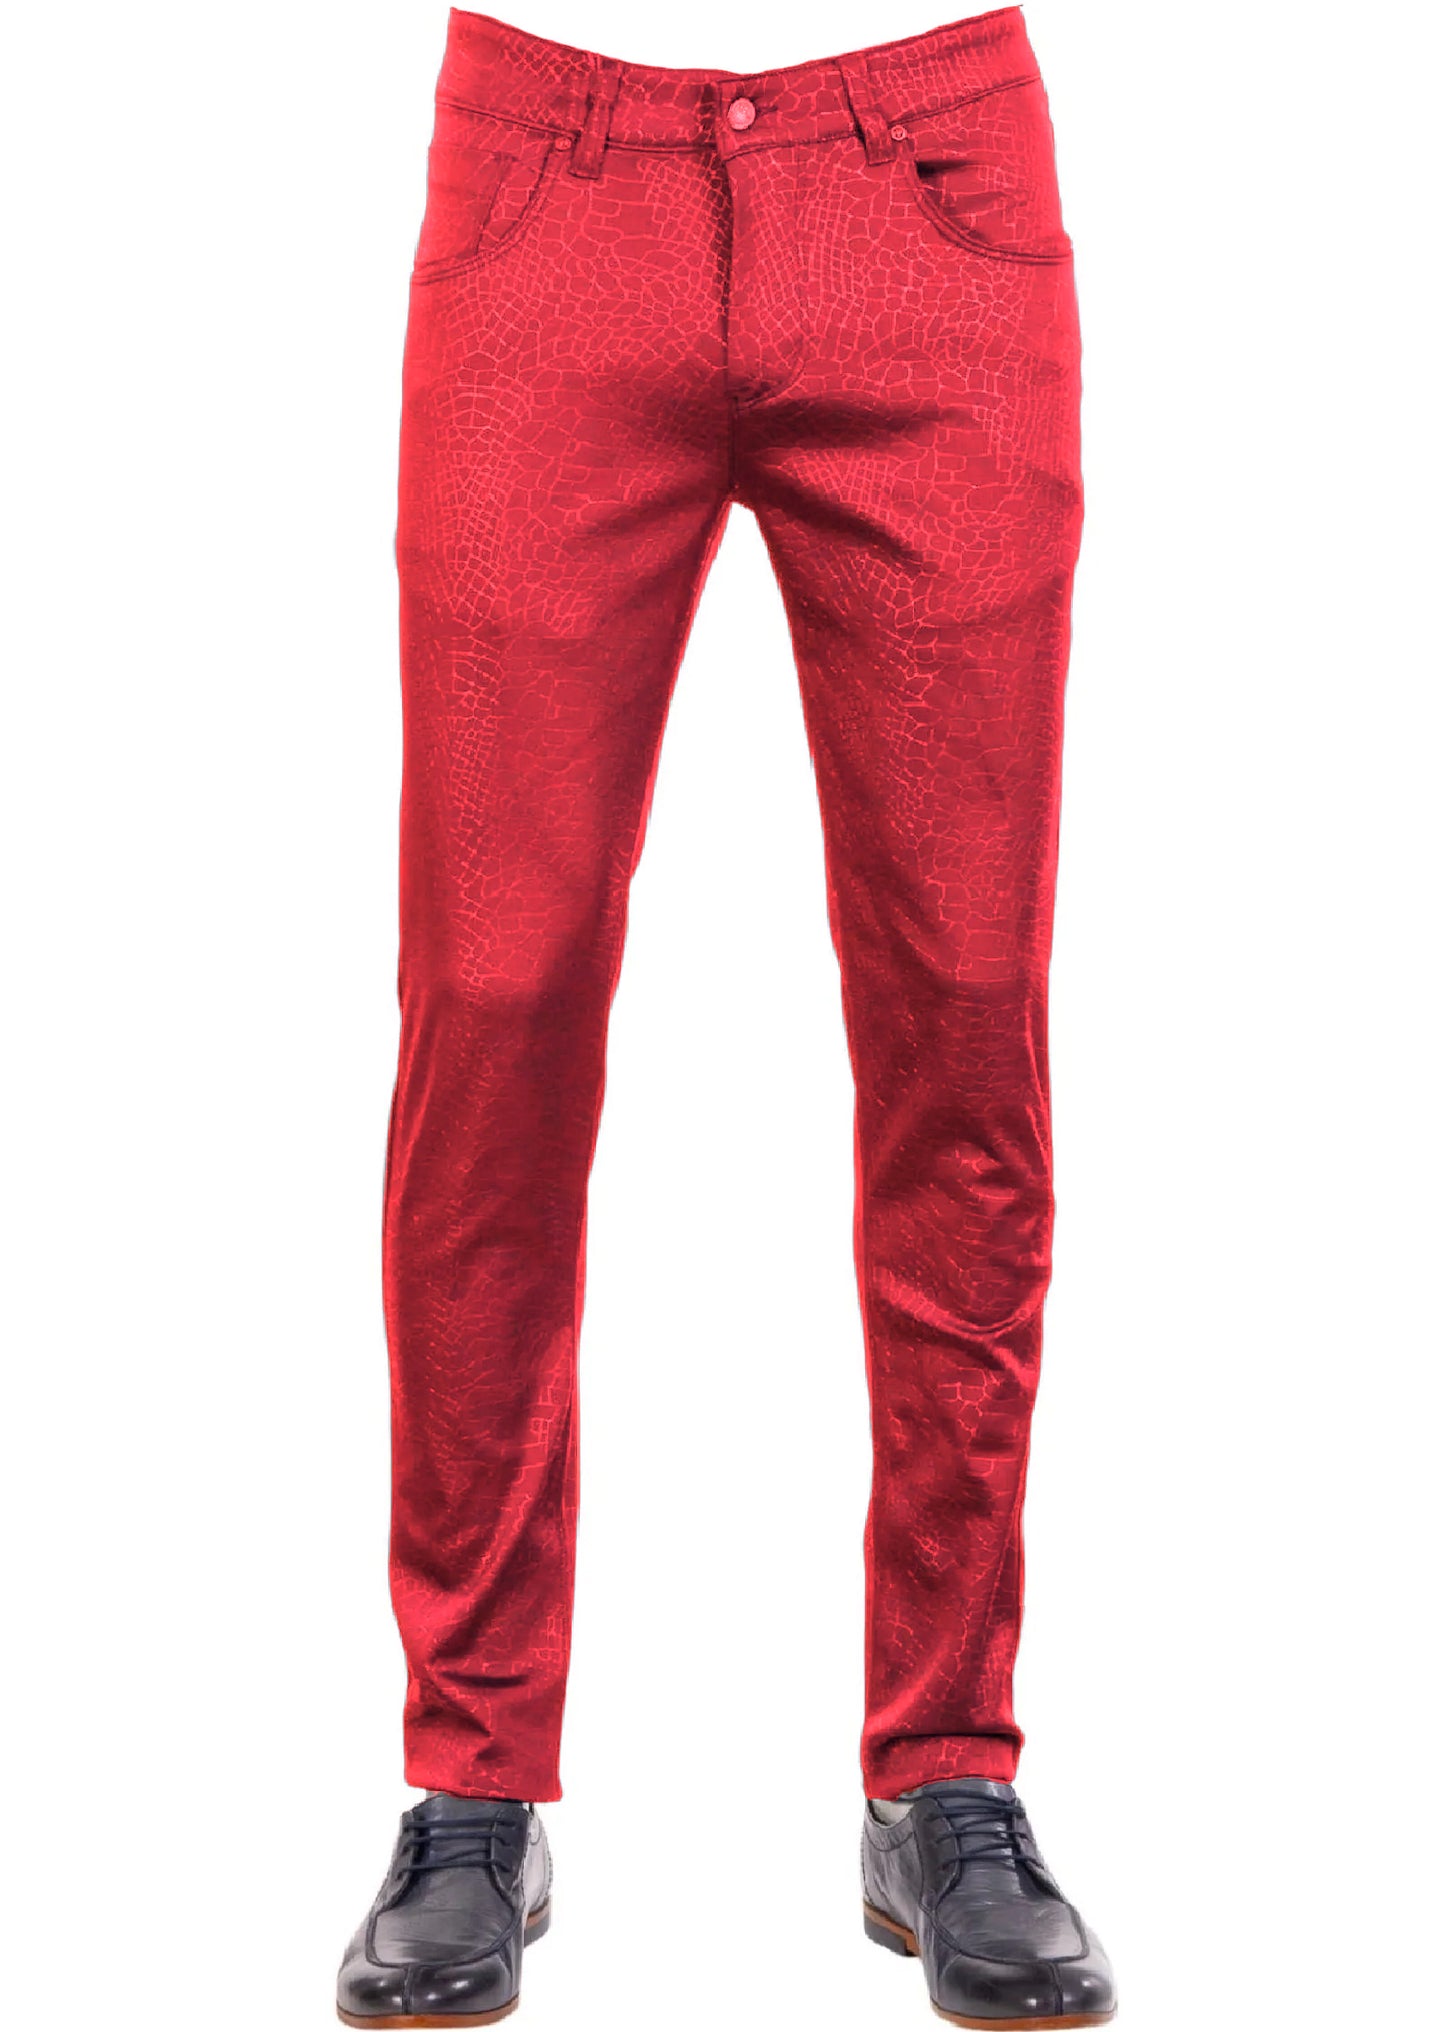 Red Star Studded Pants PANTS Mondo Collection Vercini